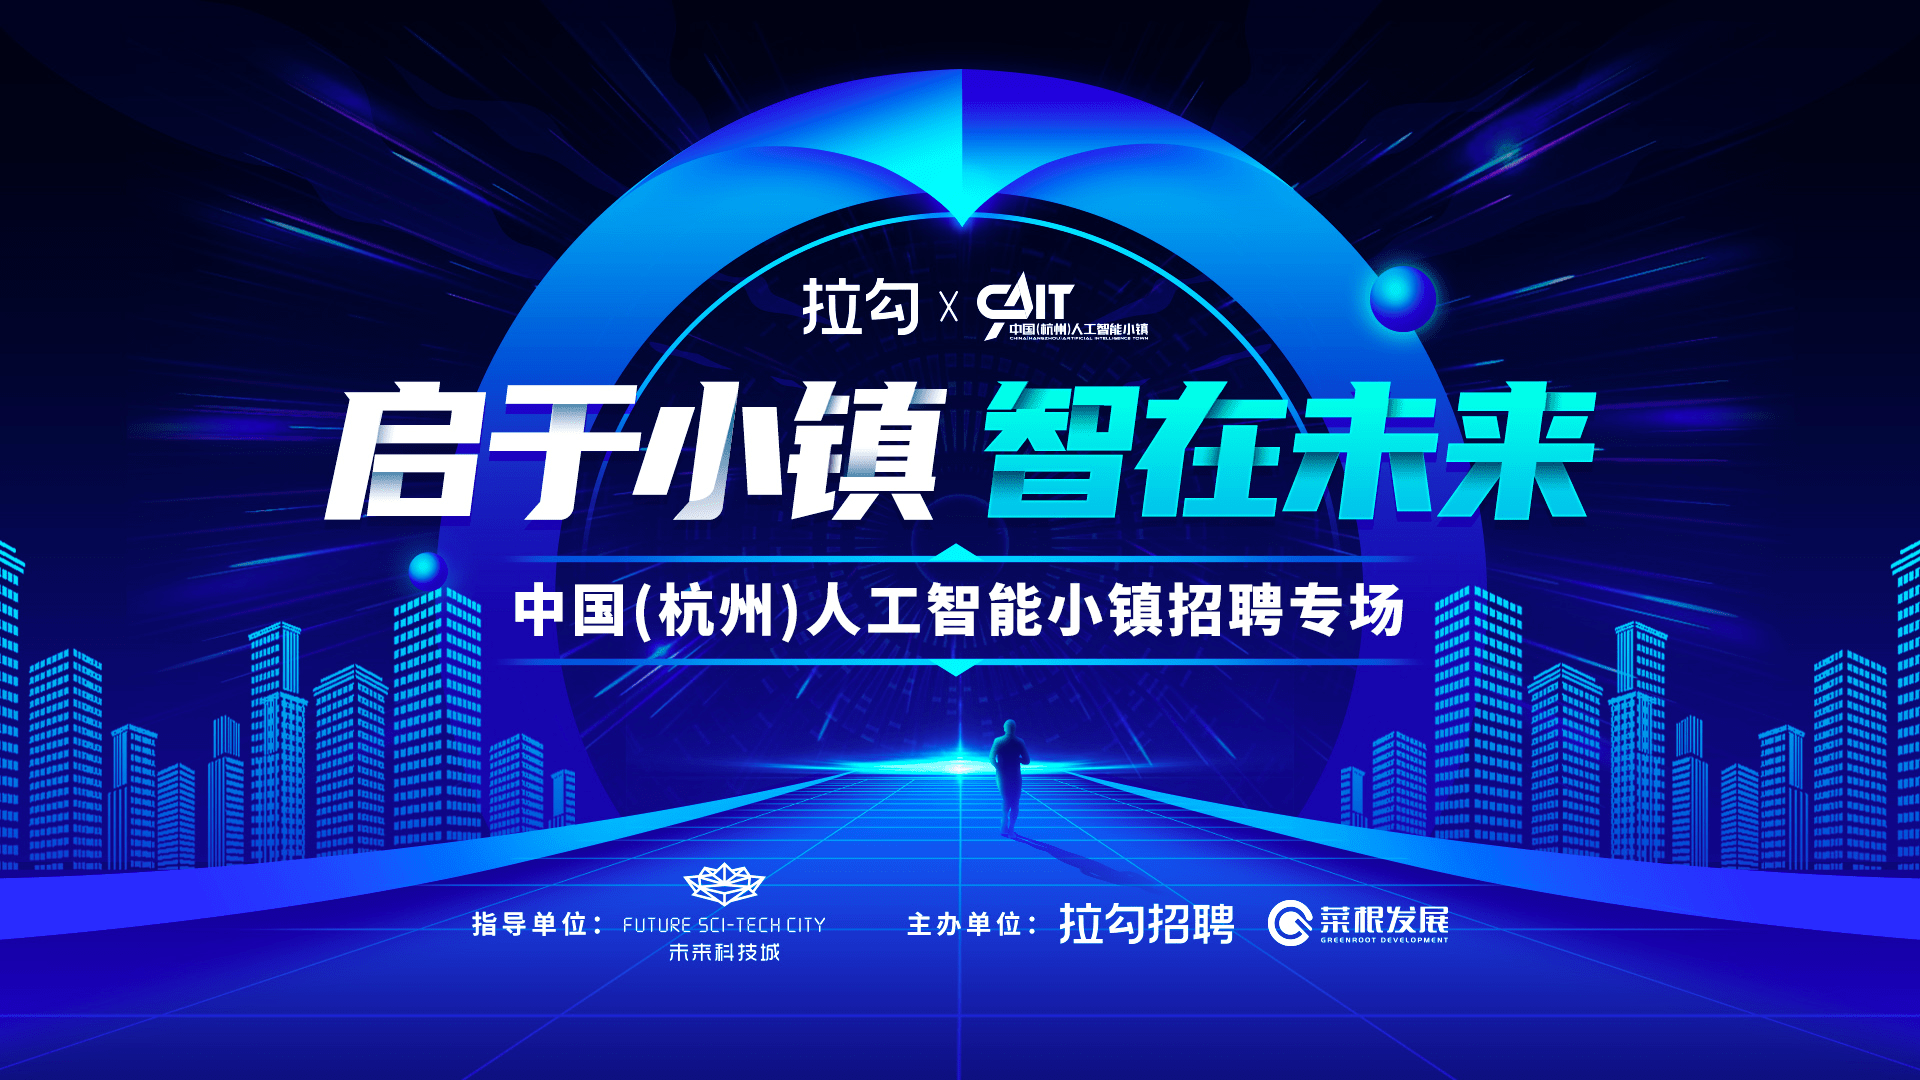 上海智能招聘_上海三大人工智能实验室启动全球招聘,百余职位即日起报名